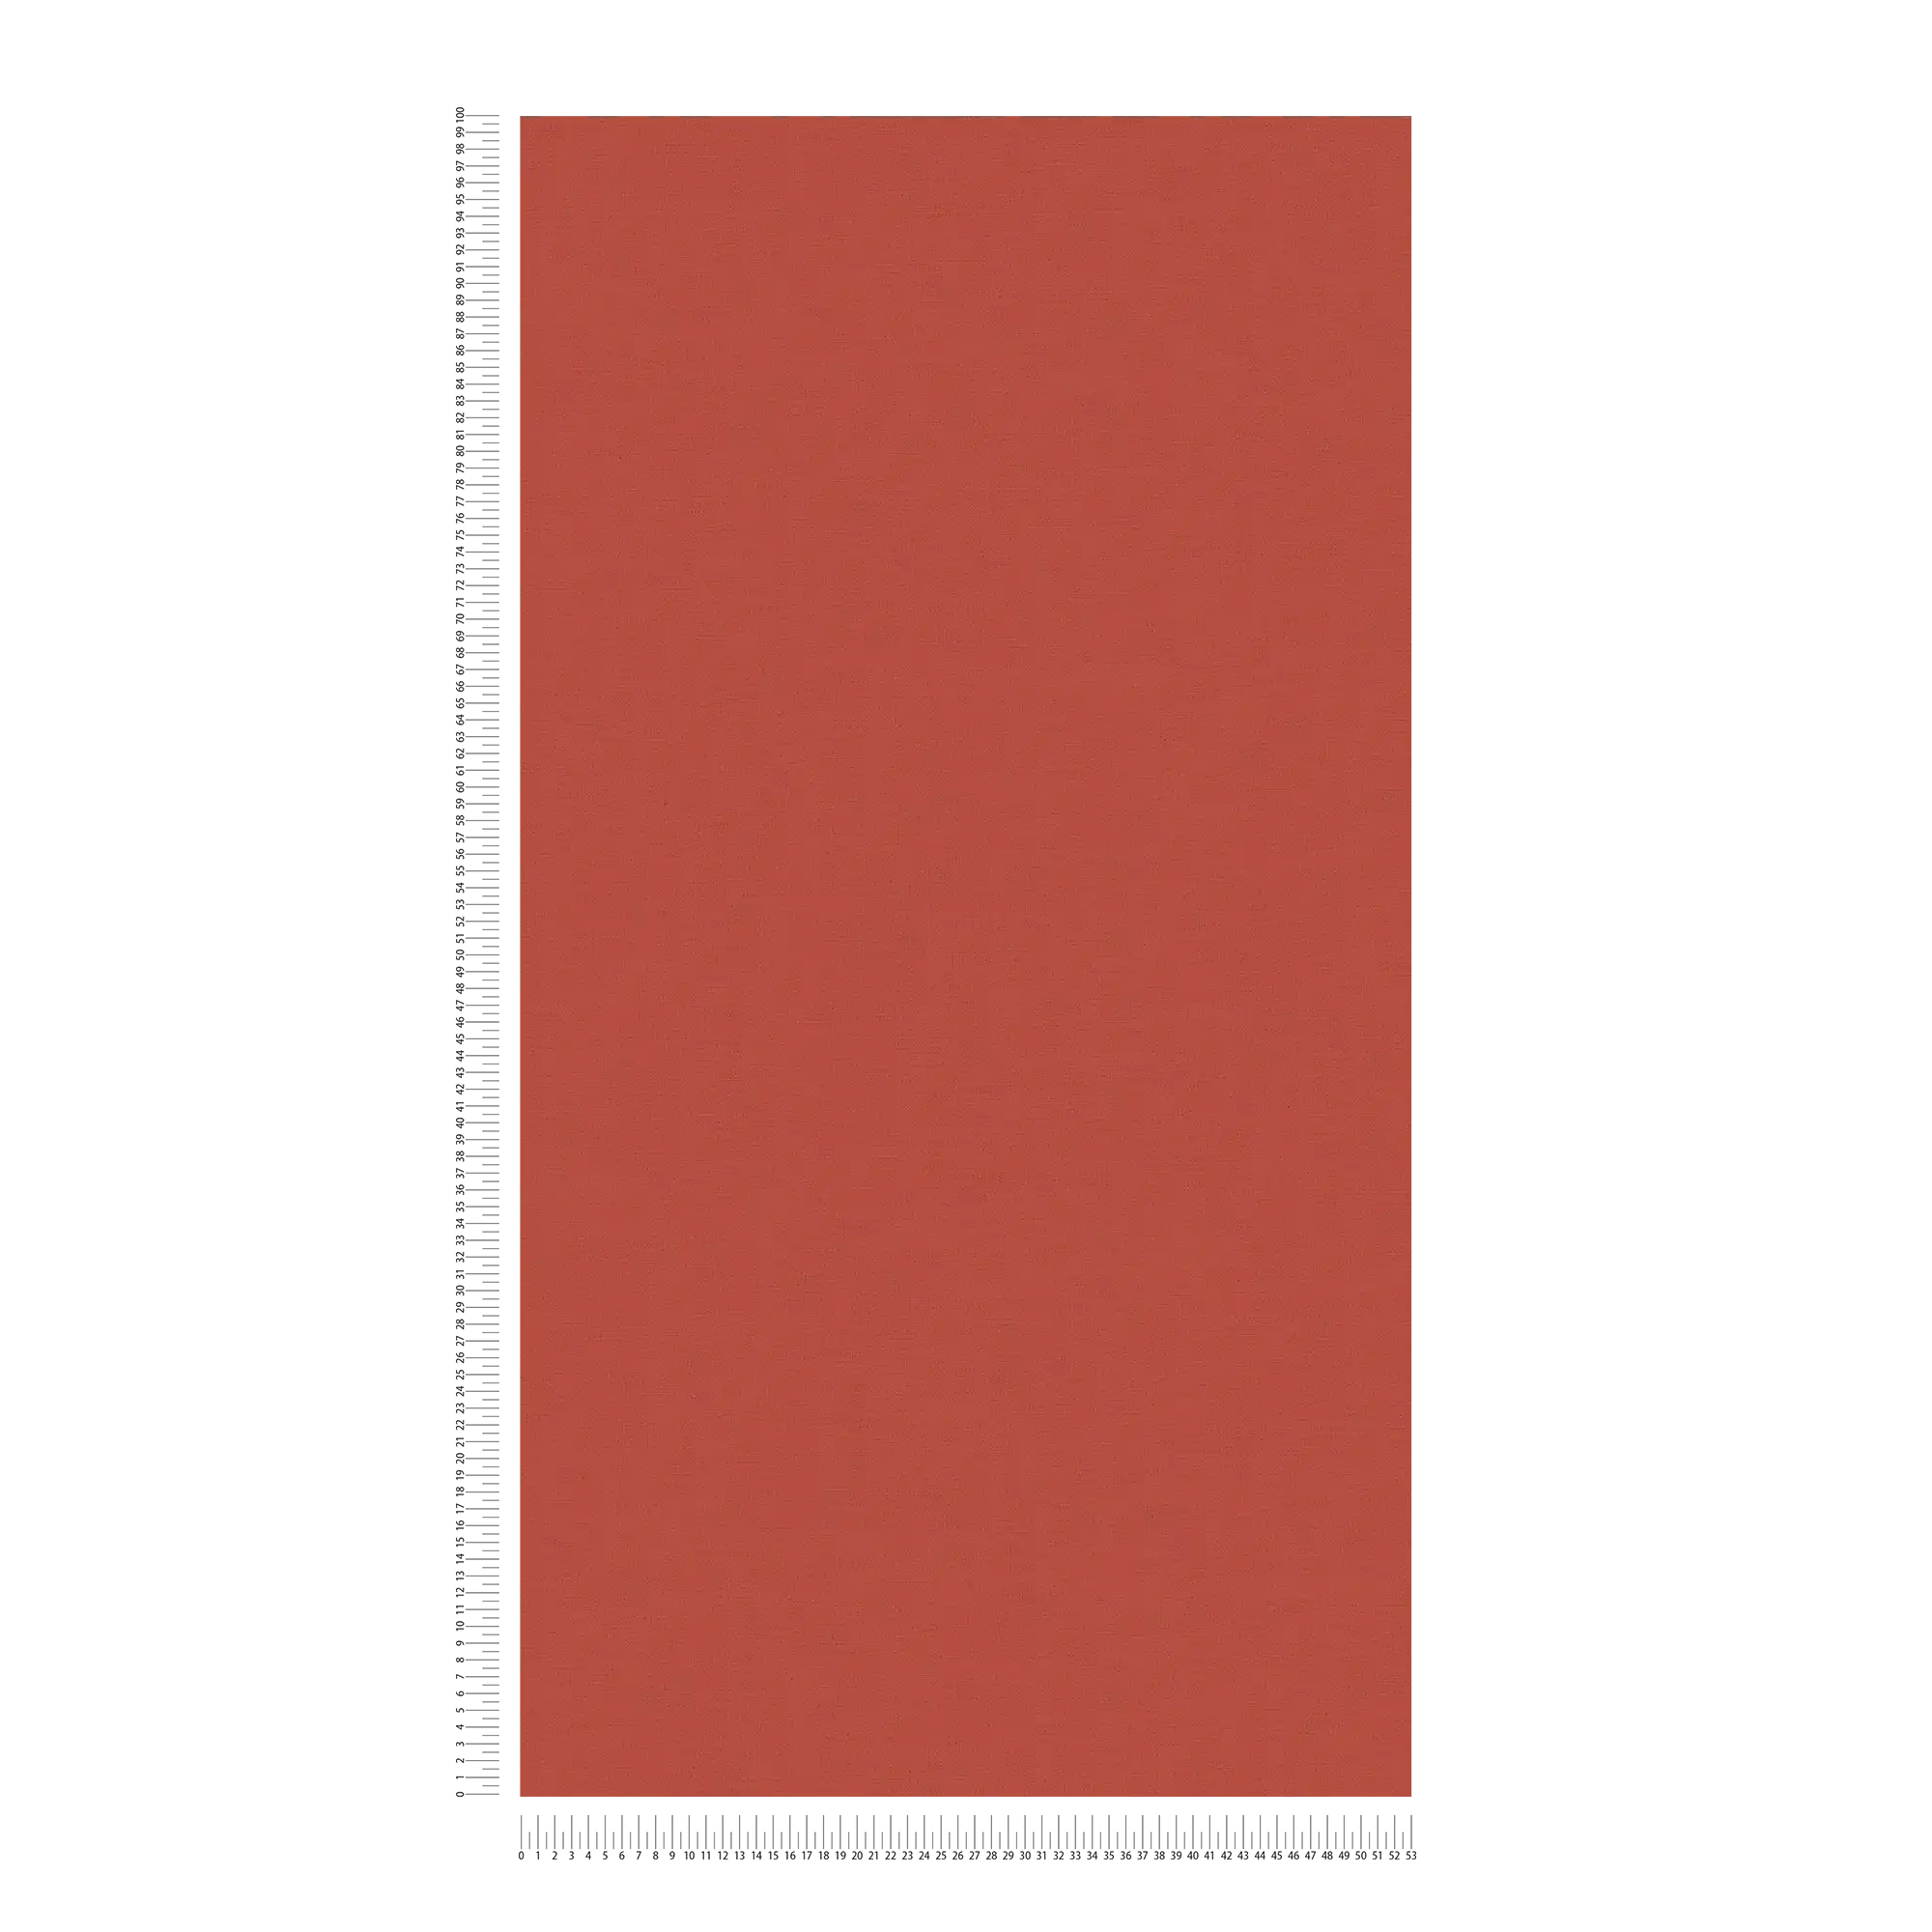             Papel pintado rojo chimenea rojo liso con diseño textil
        